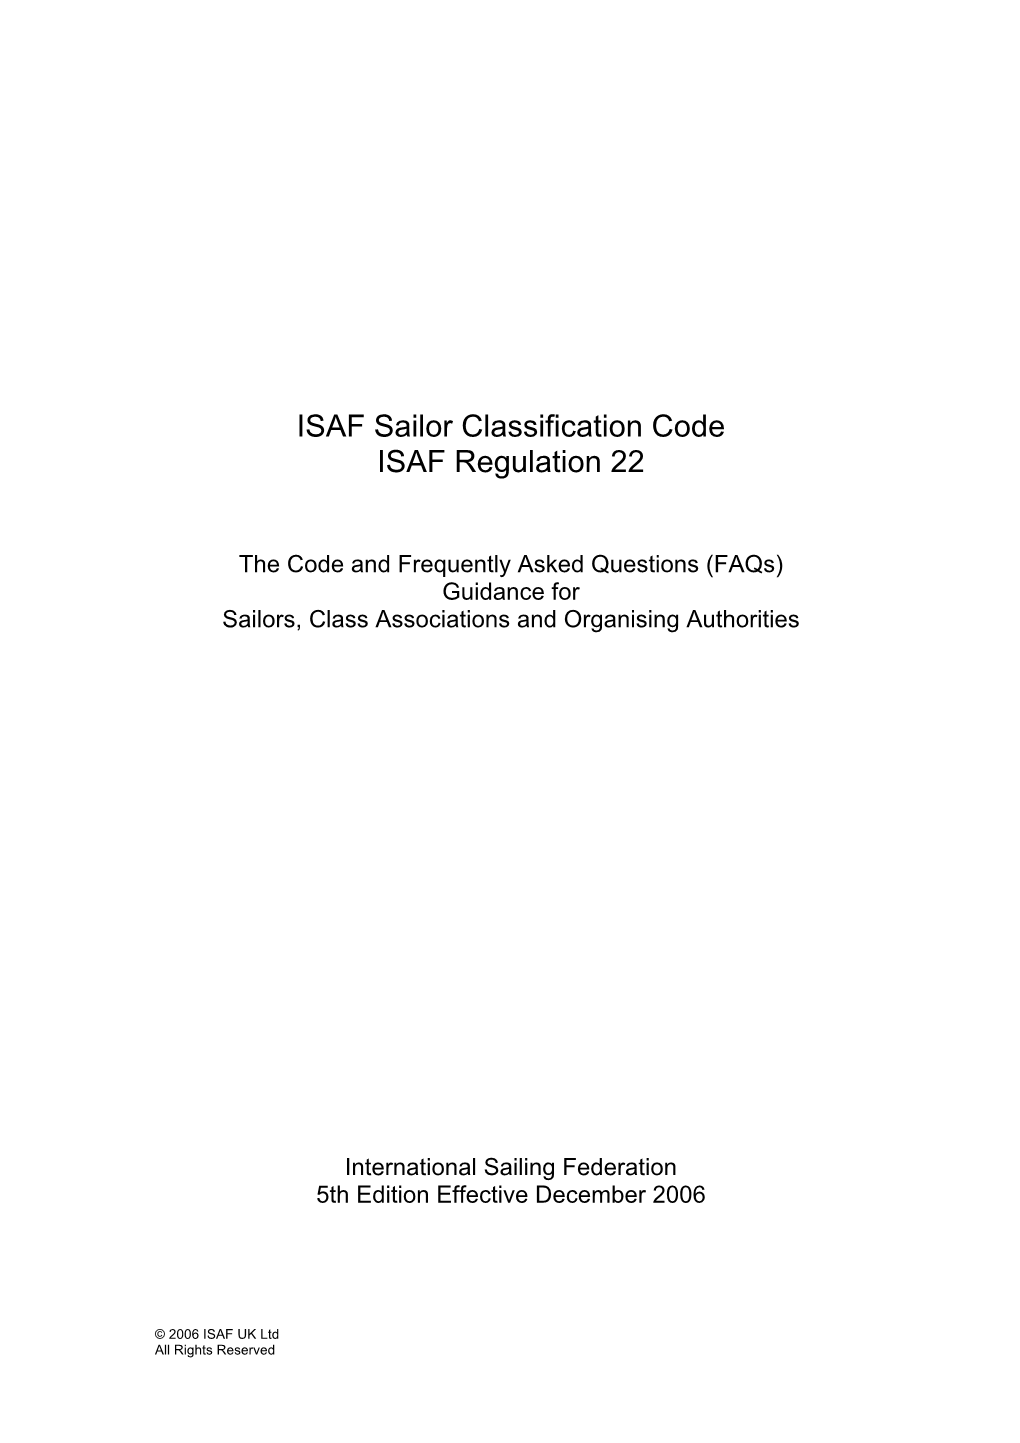 ISAF Sailor Classification Code ISAF Regulation 22